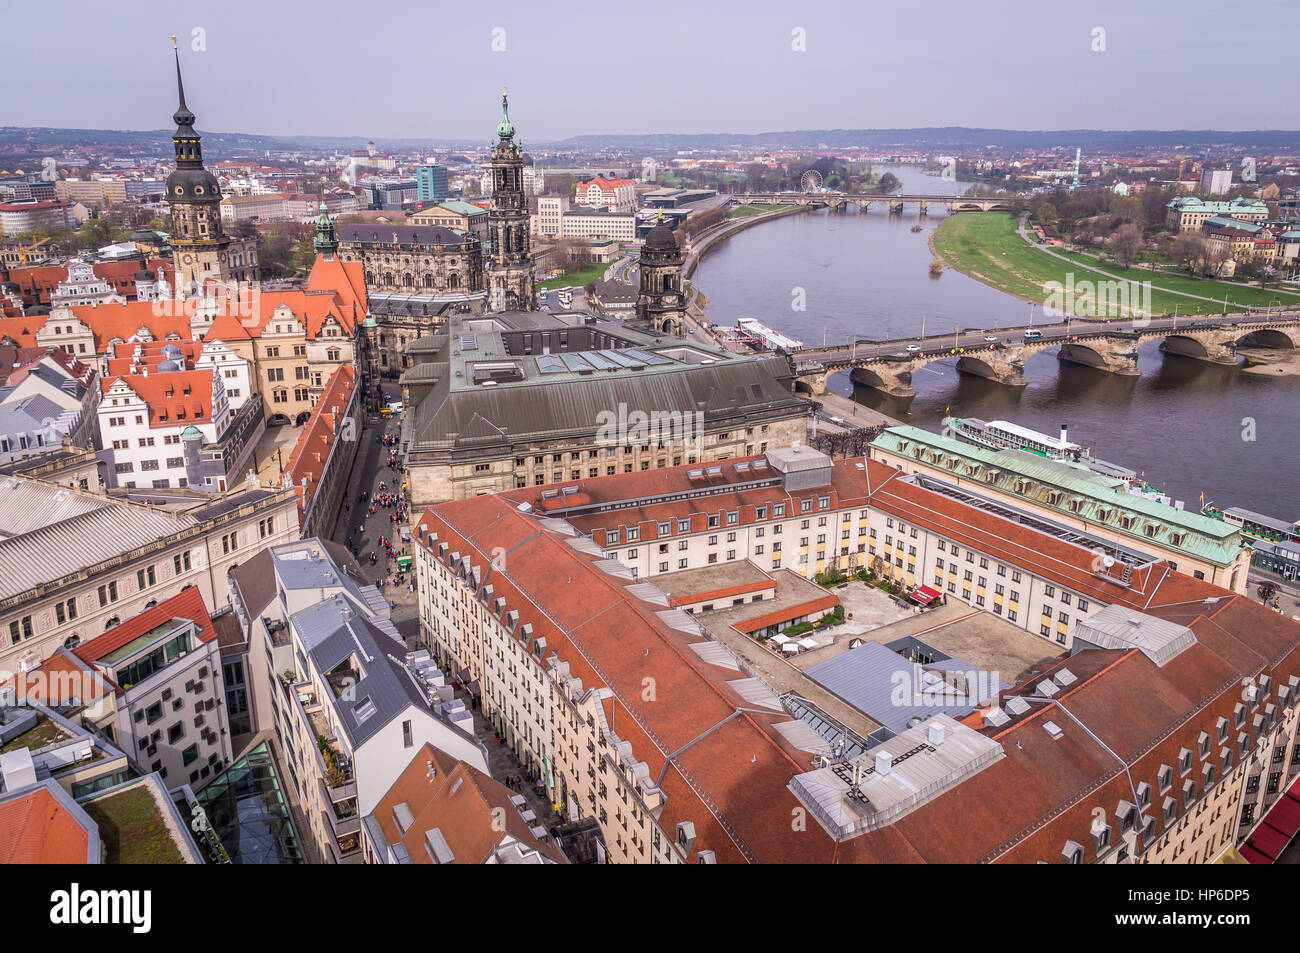 Vue aérienne de la vieille ville de Dresde, Saxe, Allemagne Banque D'Images